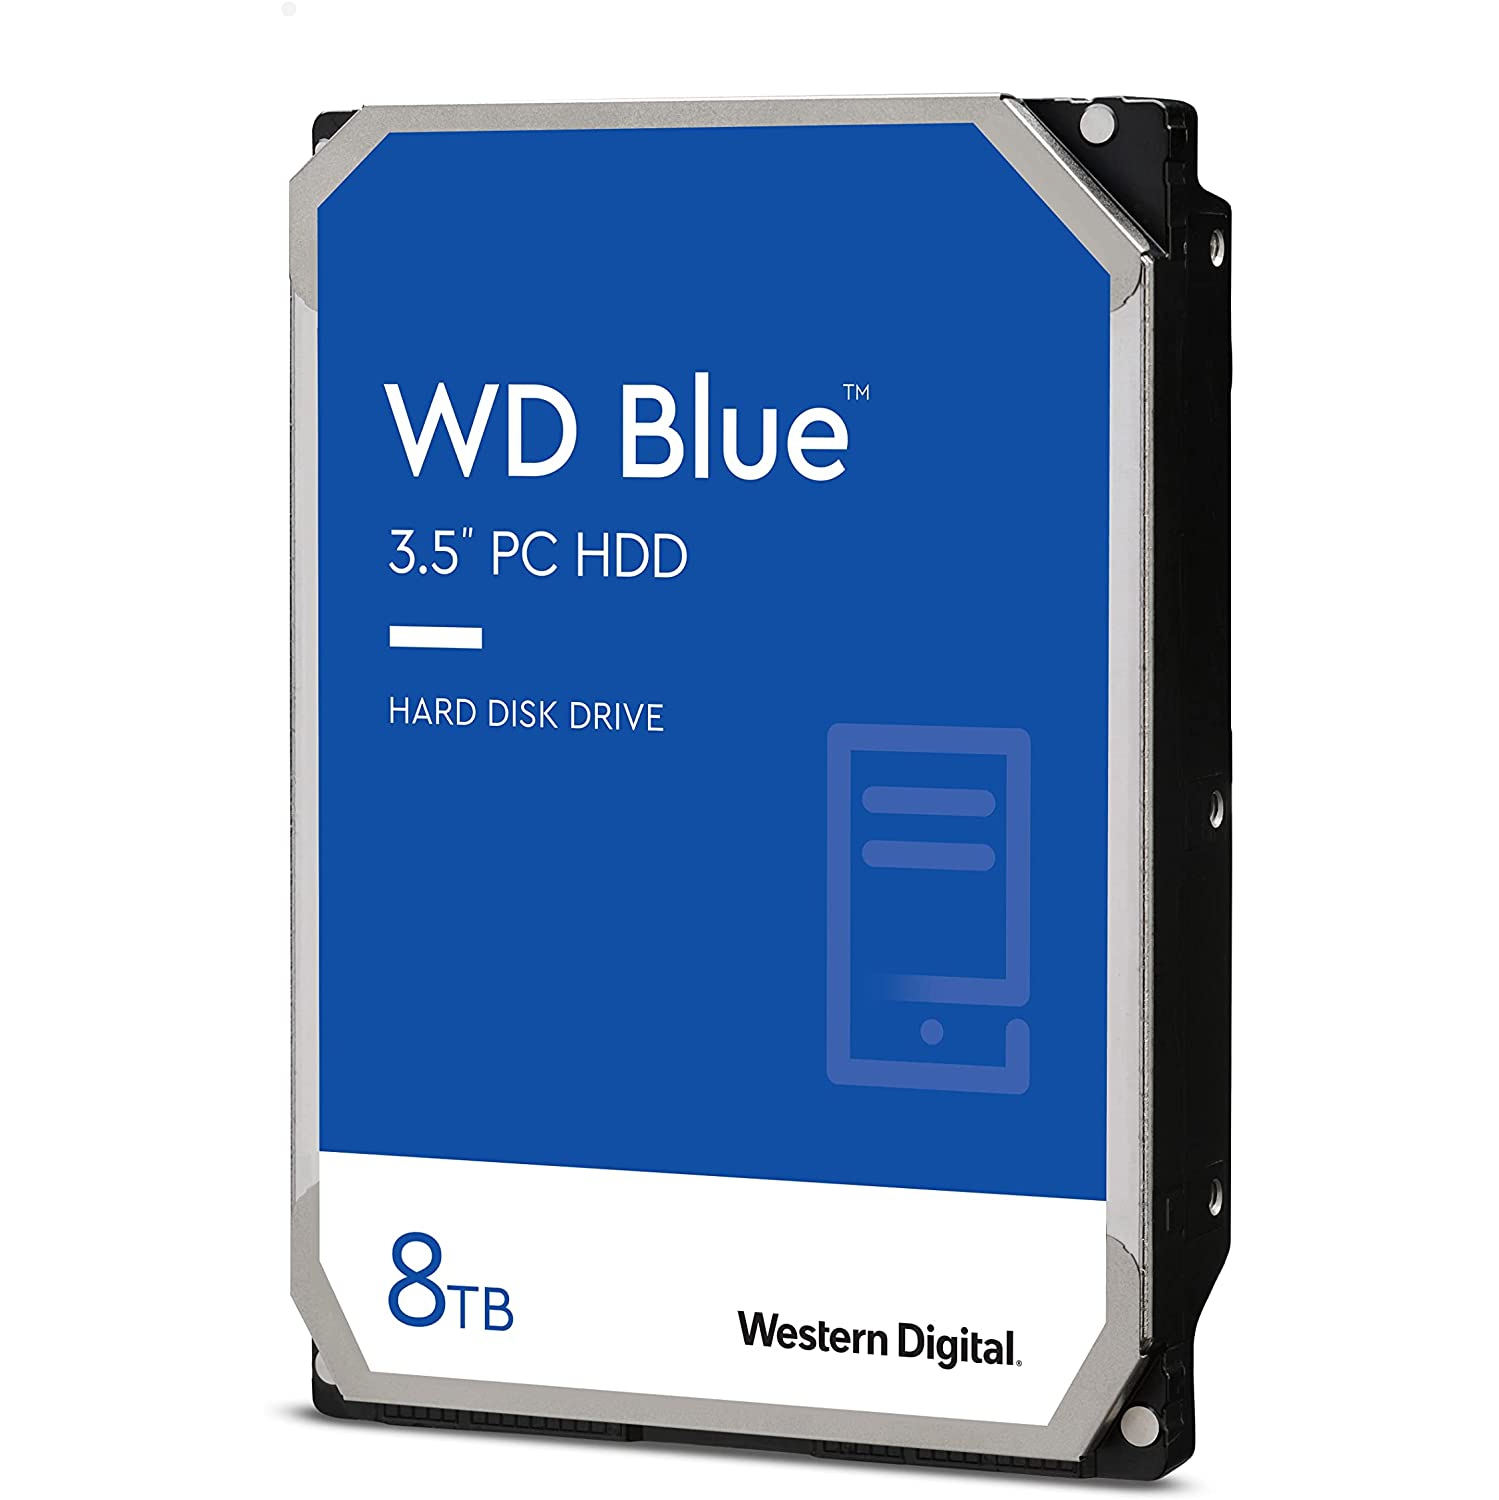 Western Digital 8TB WD Blue PC Hard Drive HDD - 5640 RPM, SATA 6 Gb/s, 128 MB Cache, 3.5" (WD80EAZZ)